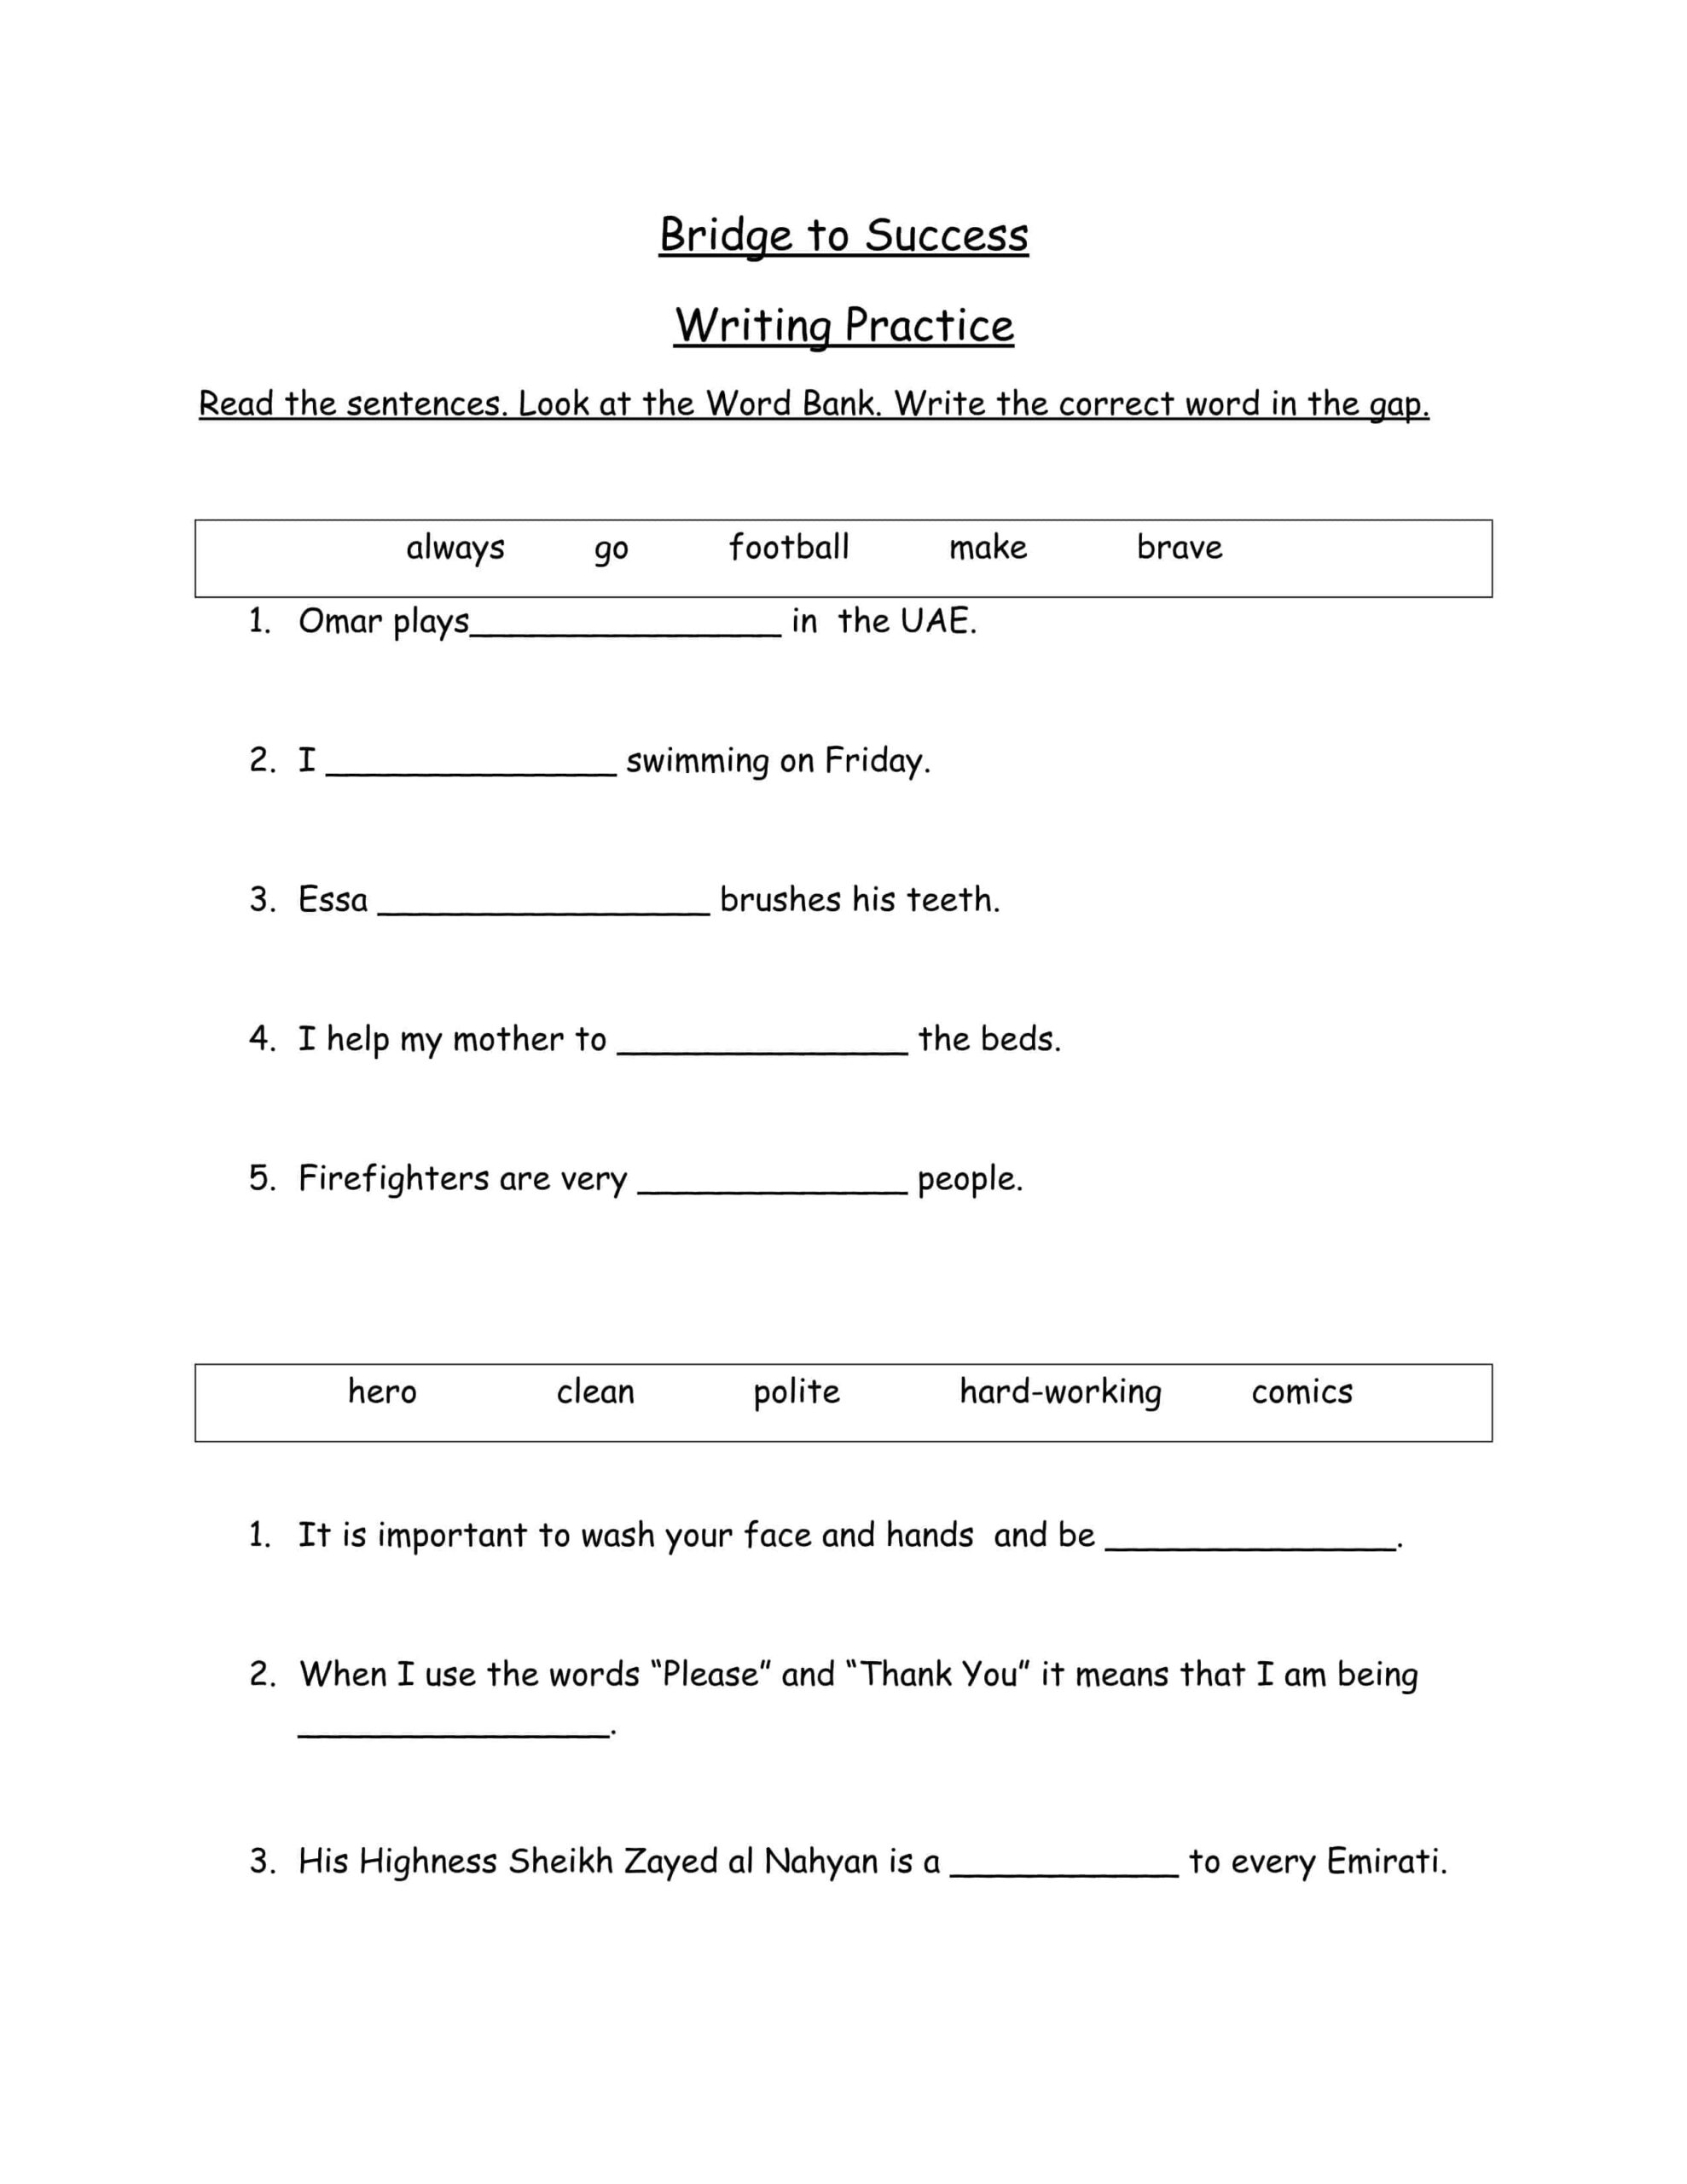 أوراق عمل Writing Practice اللغة الإنجليزية الصف الرابع